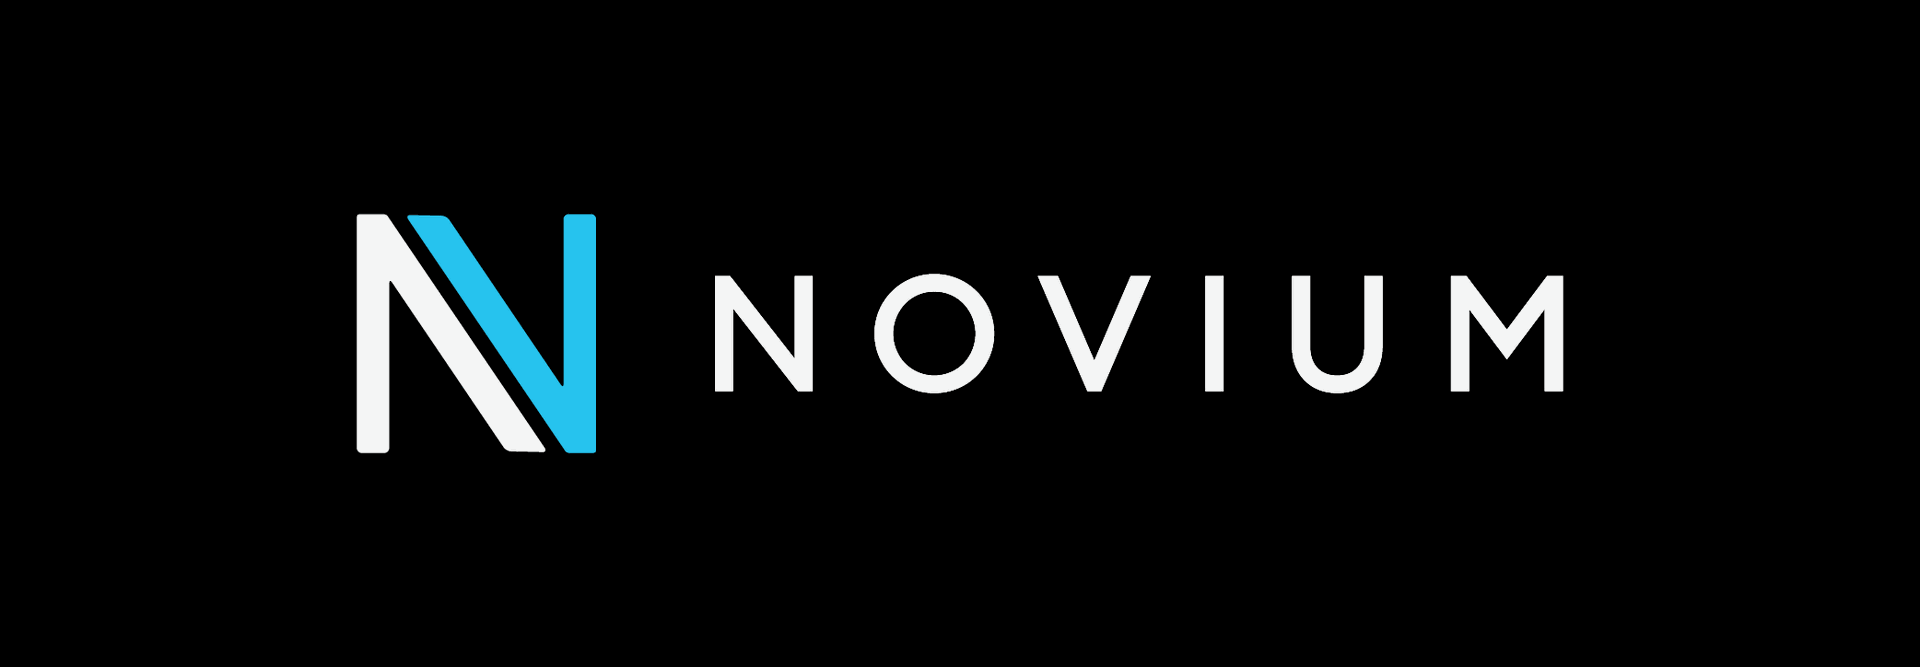 Novium Logo.png